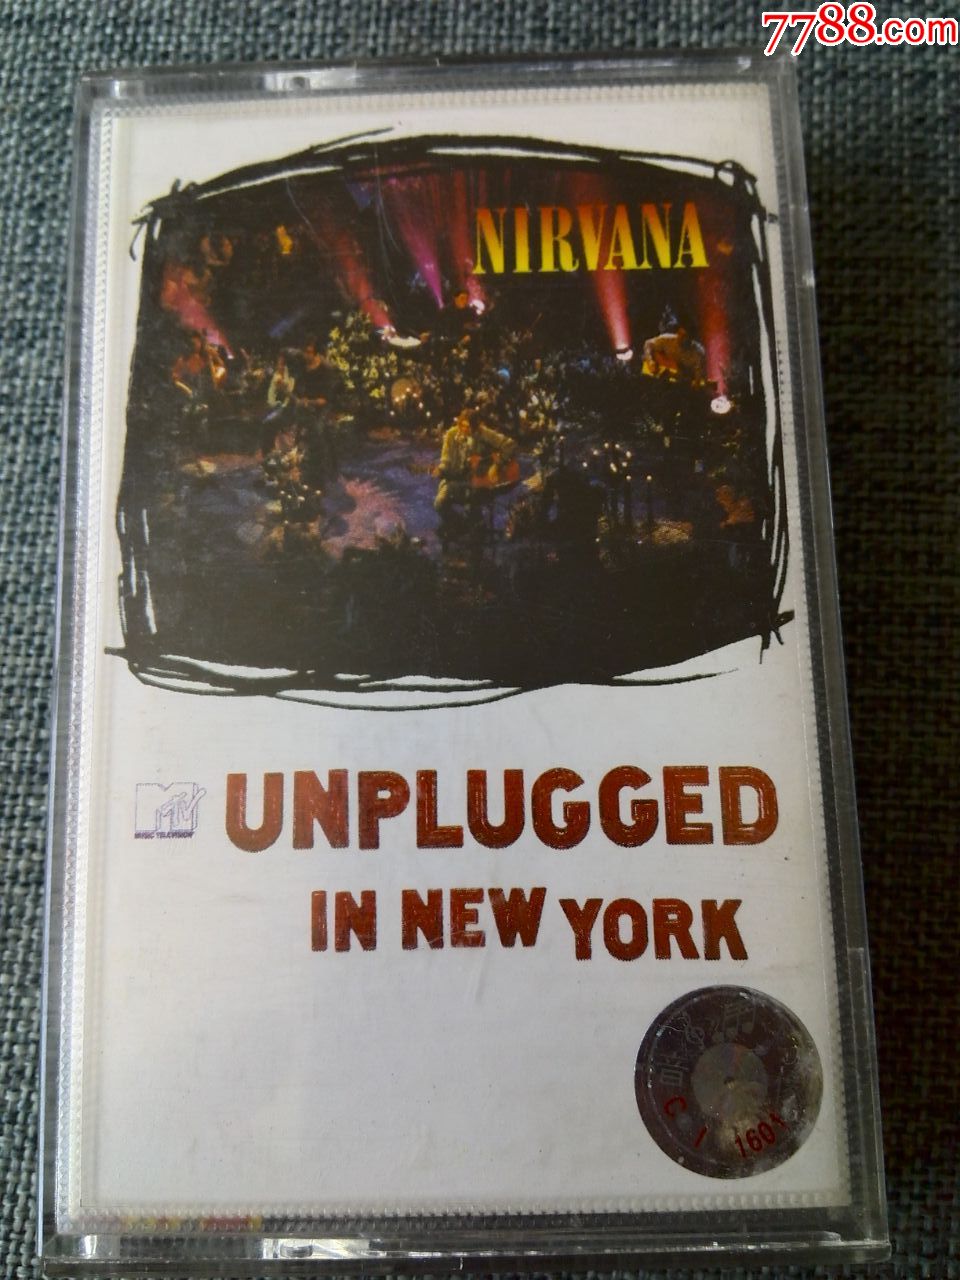 原版引进,美国摇滚乐队nirvana(涅盘乐队)专辑《纽约没有插电》(蓝色